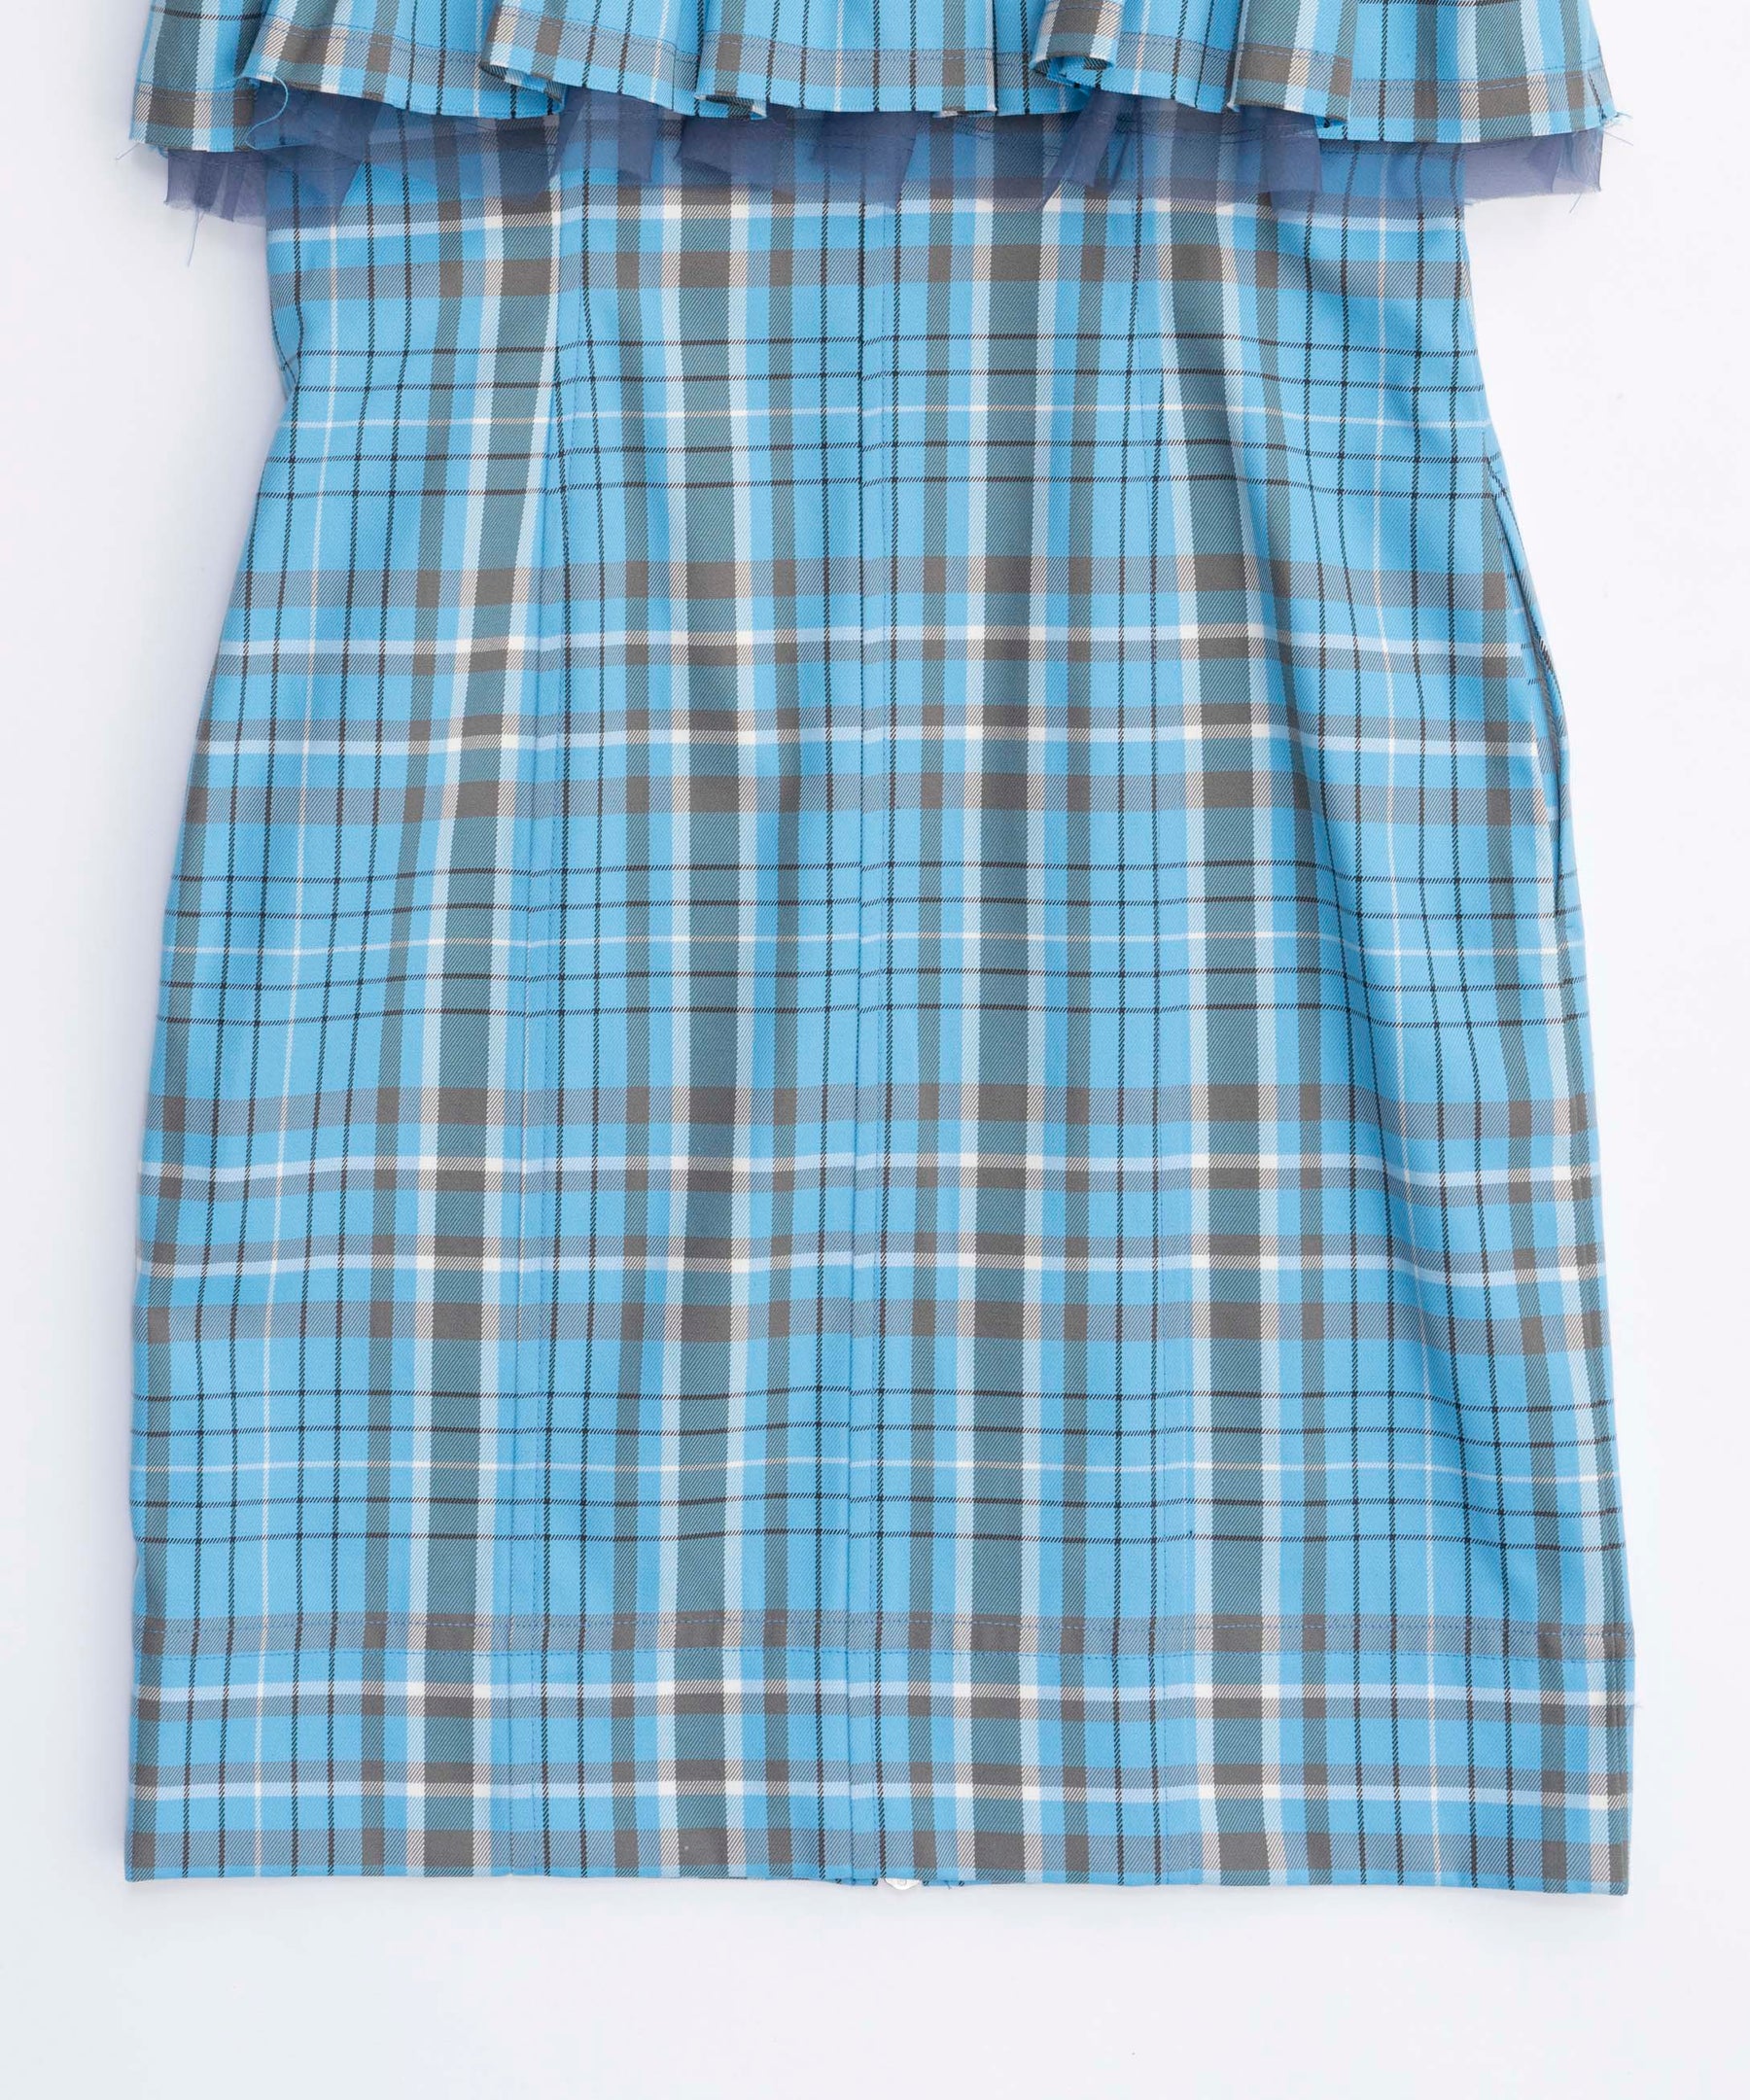 Check Camisole Mini Dress